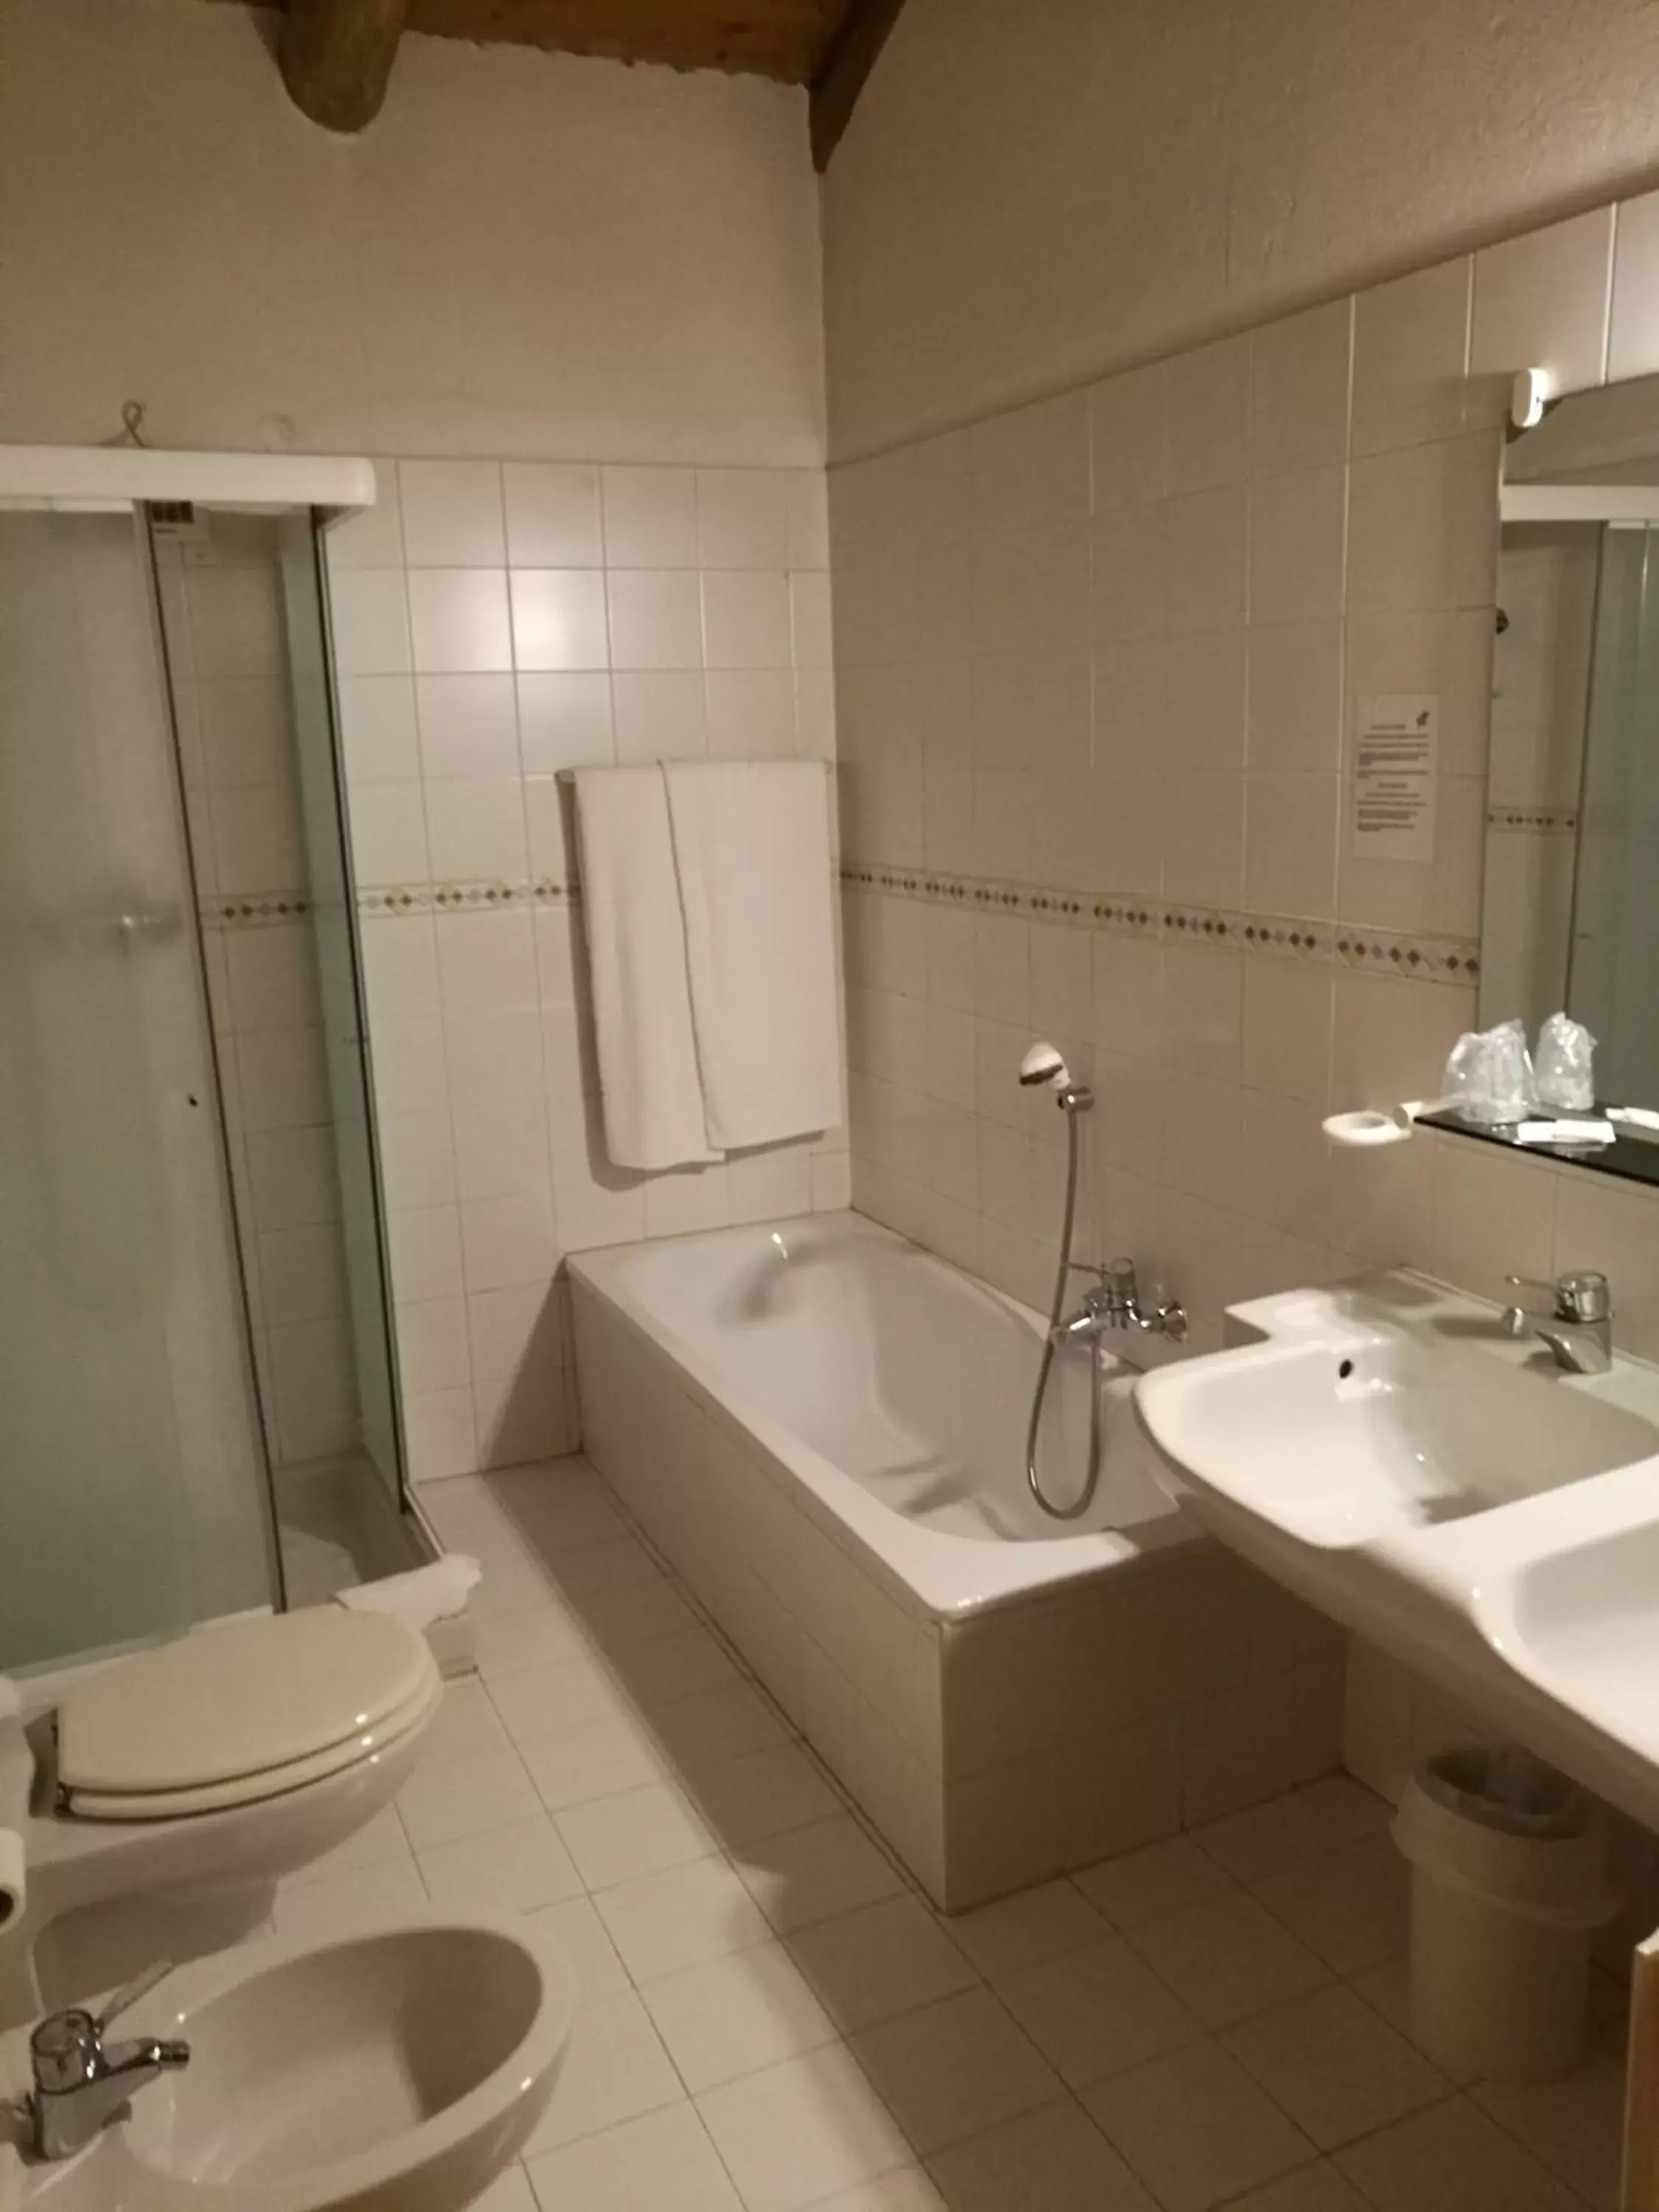 Bathroom in Costa degli Ulivi